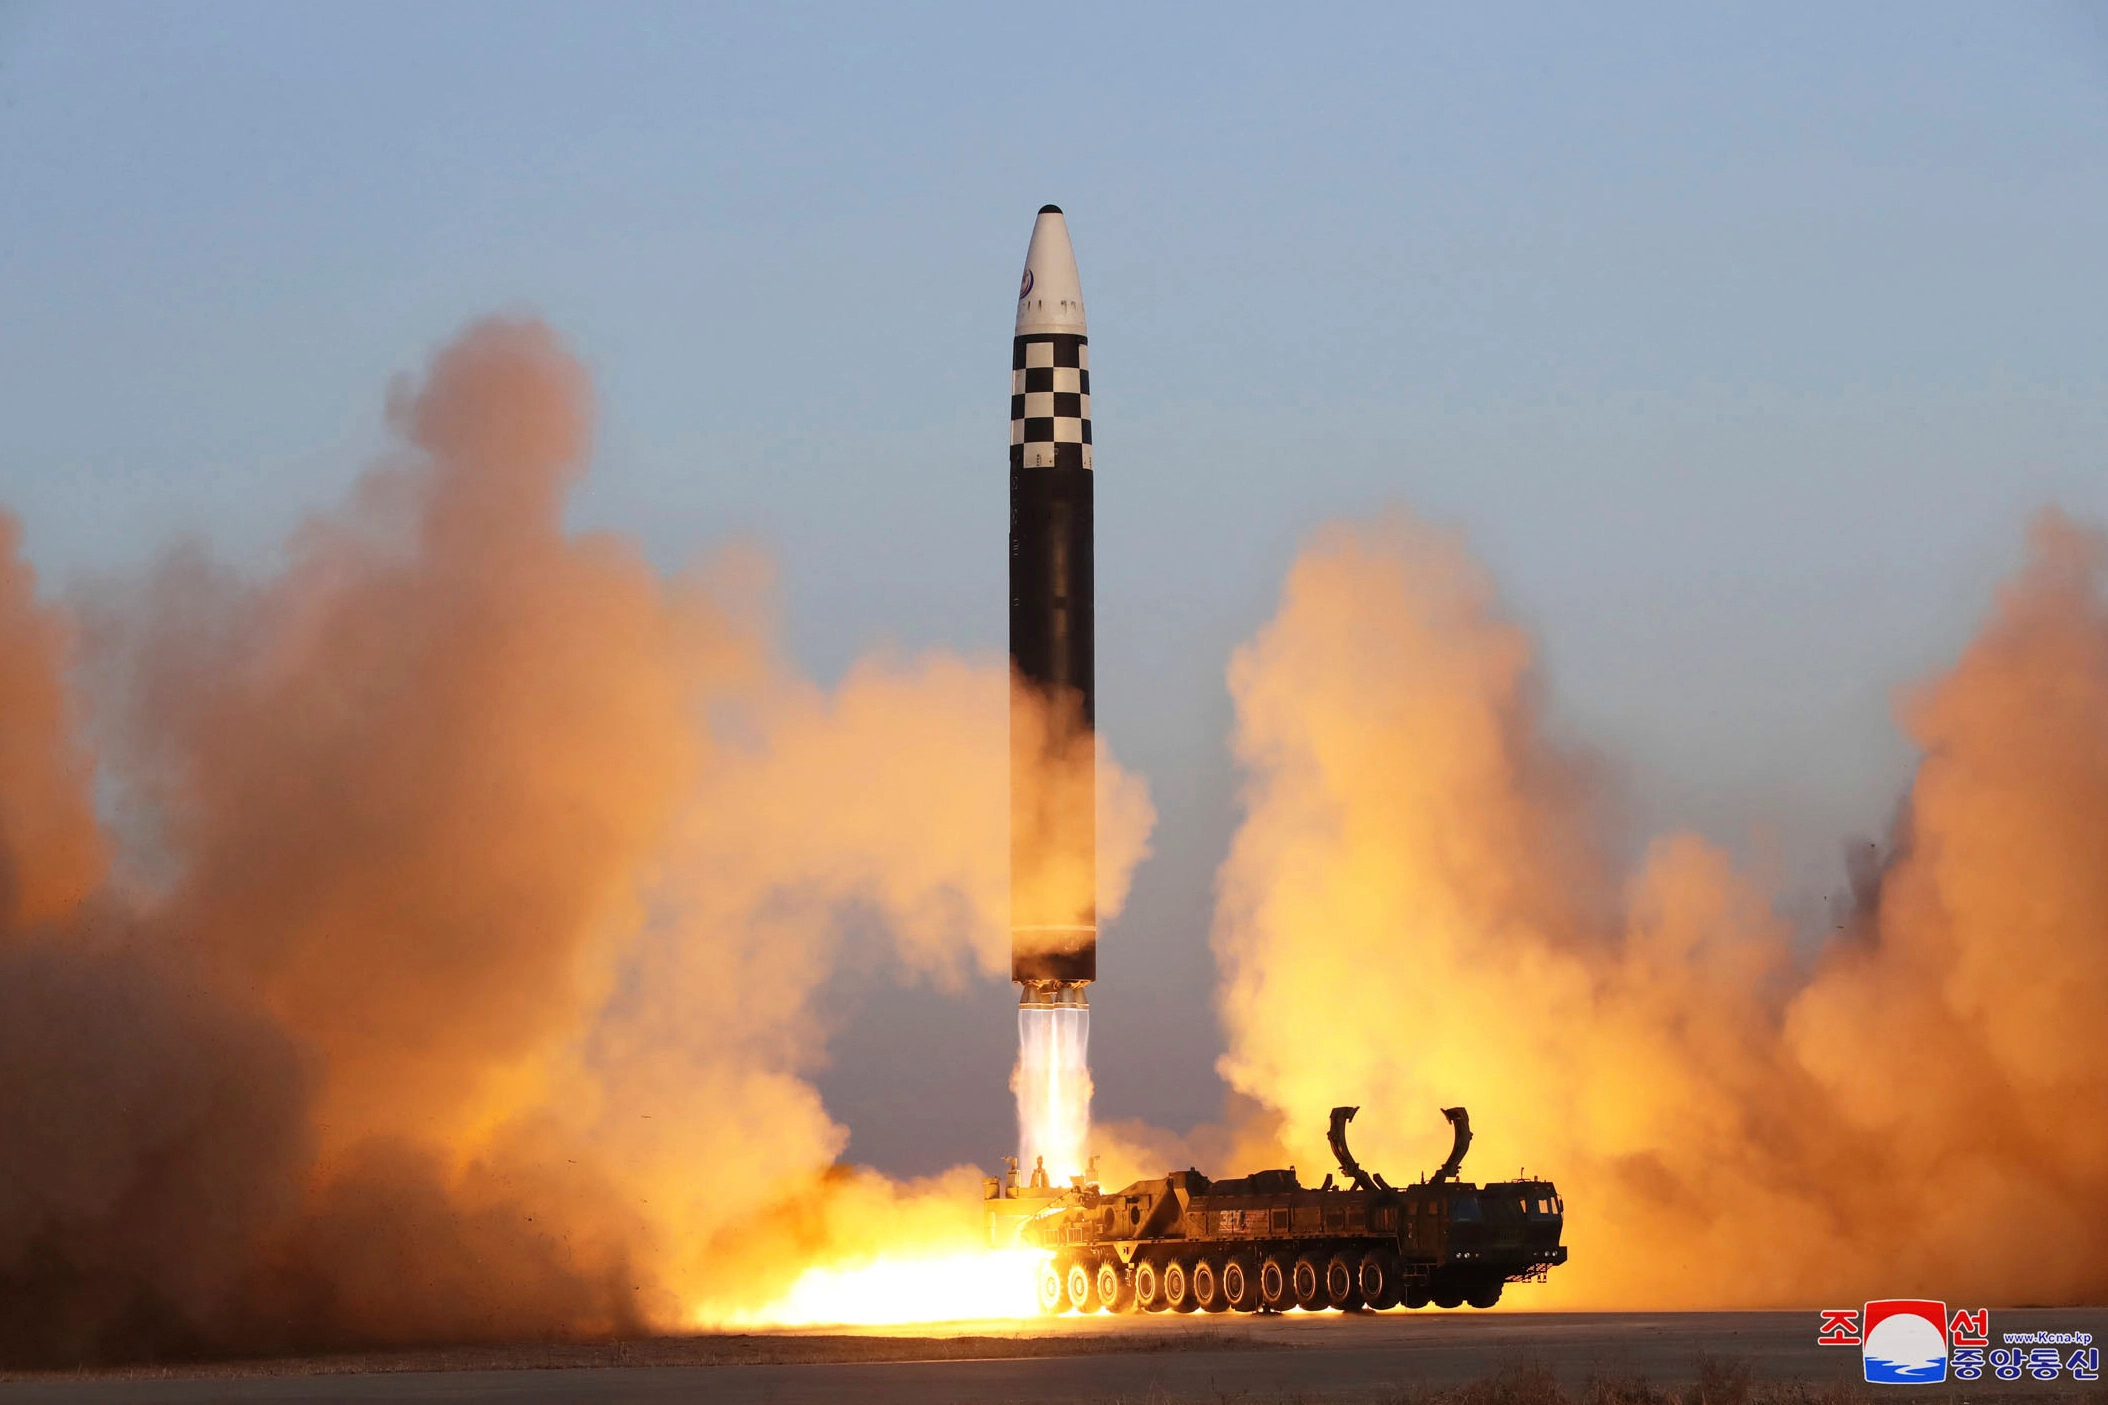 米国、北朝鮮 ミサイル移送問題でロシア企業を制裁